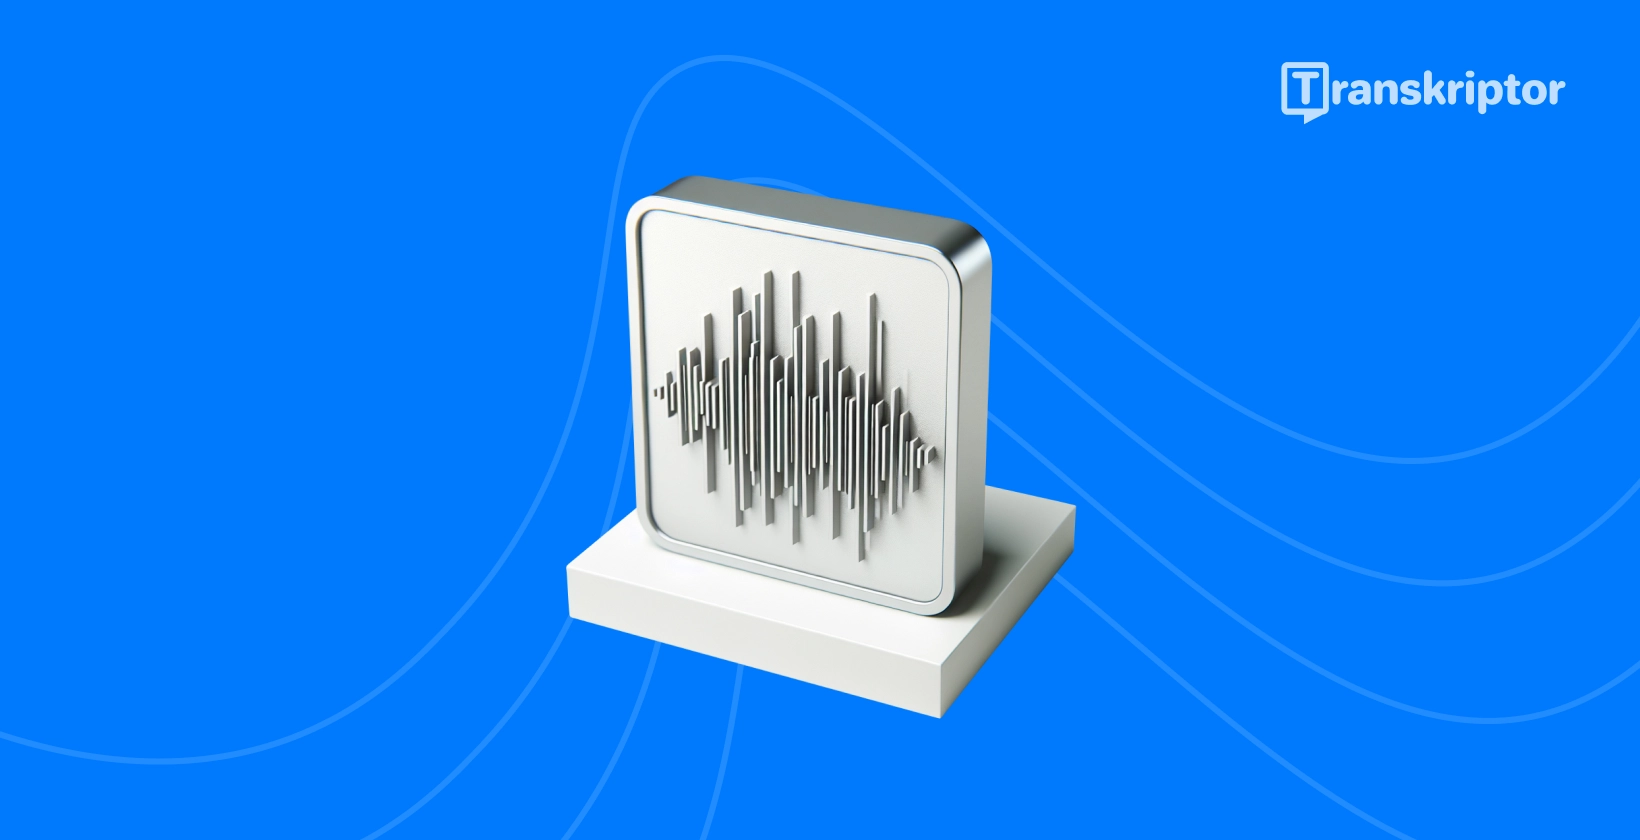 Ilustrația undelor sonore pe un monitor reprezintă procesul de transcriere audio live, așa cum este detaliat în ghid.